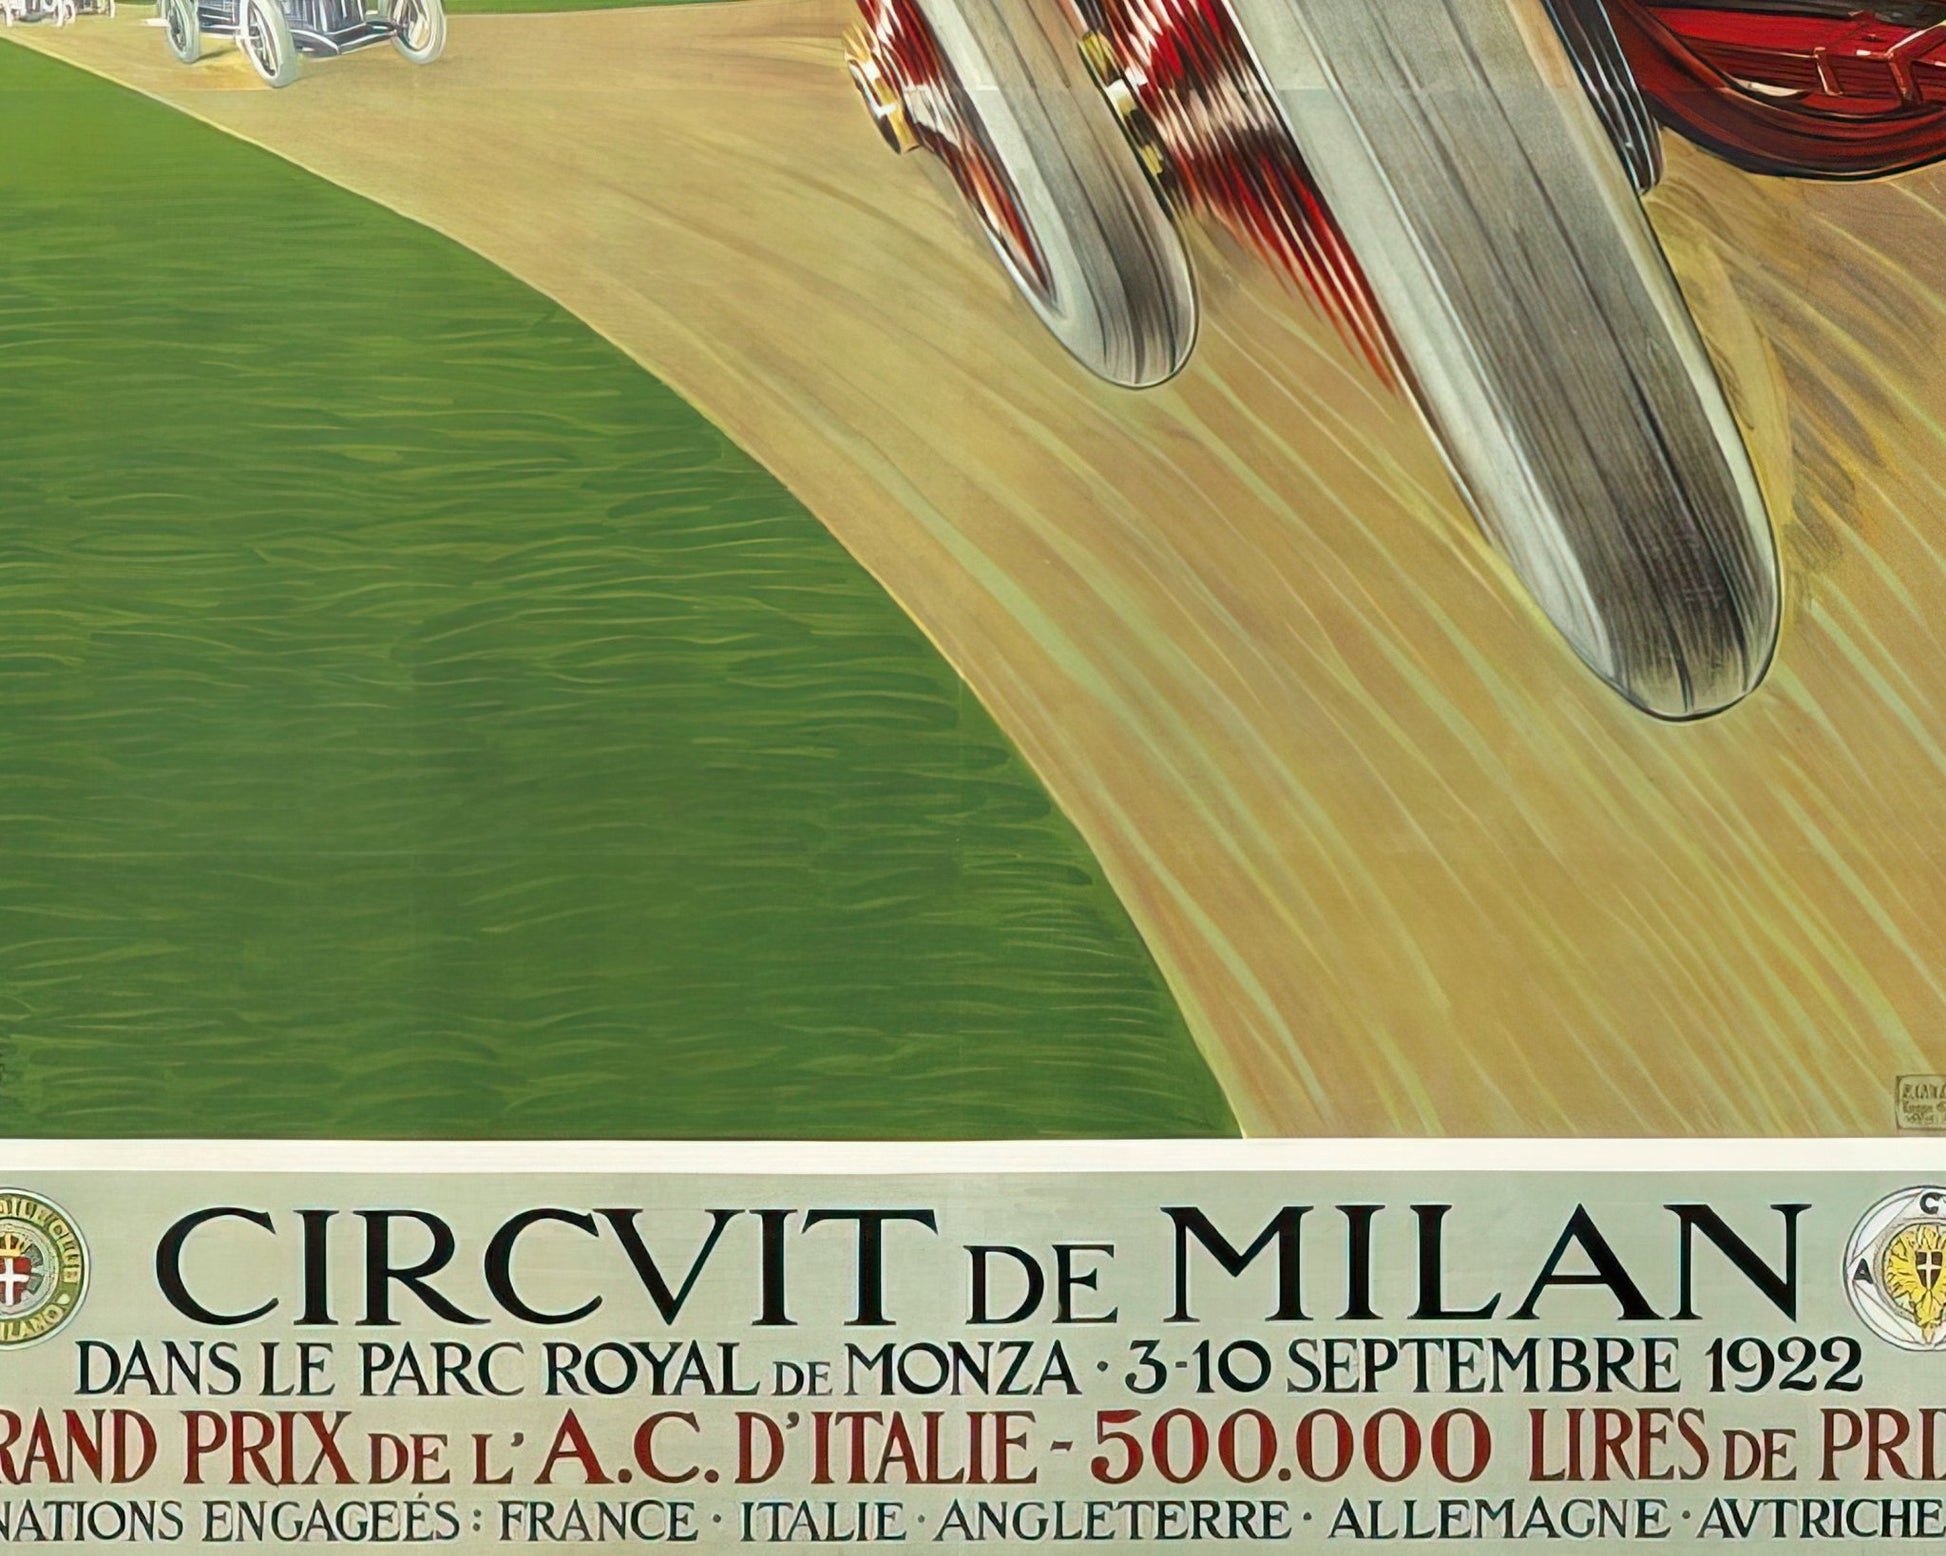 Aldo Mazza "Circuit de Milan" (c.1922) - Mabon Gallery